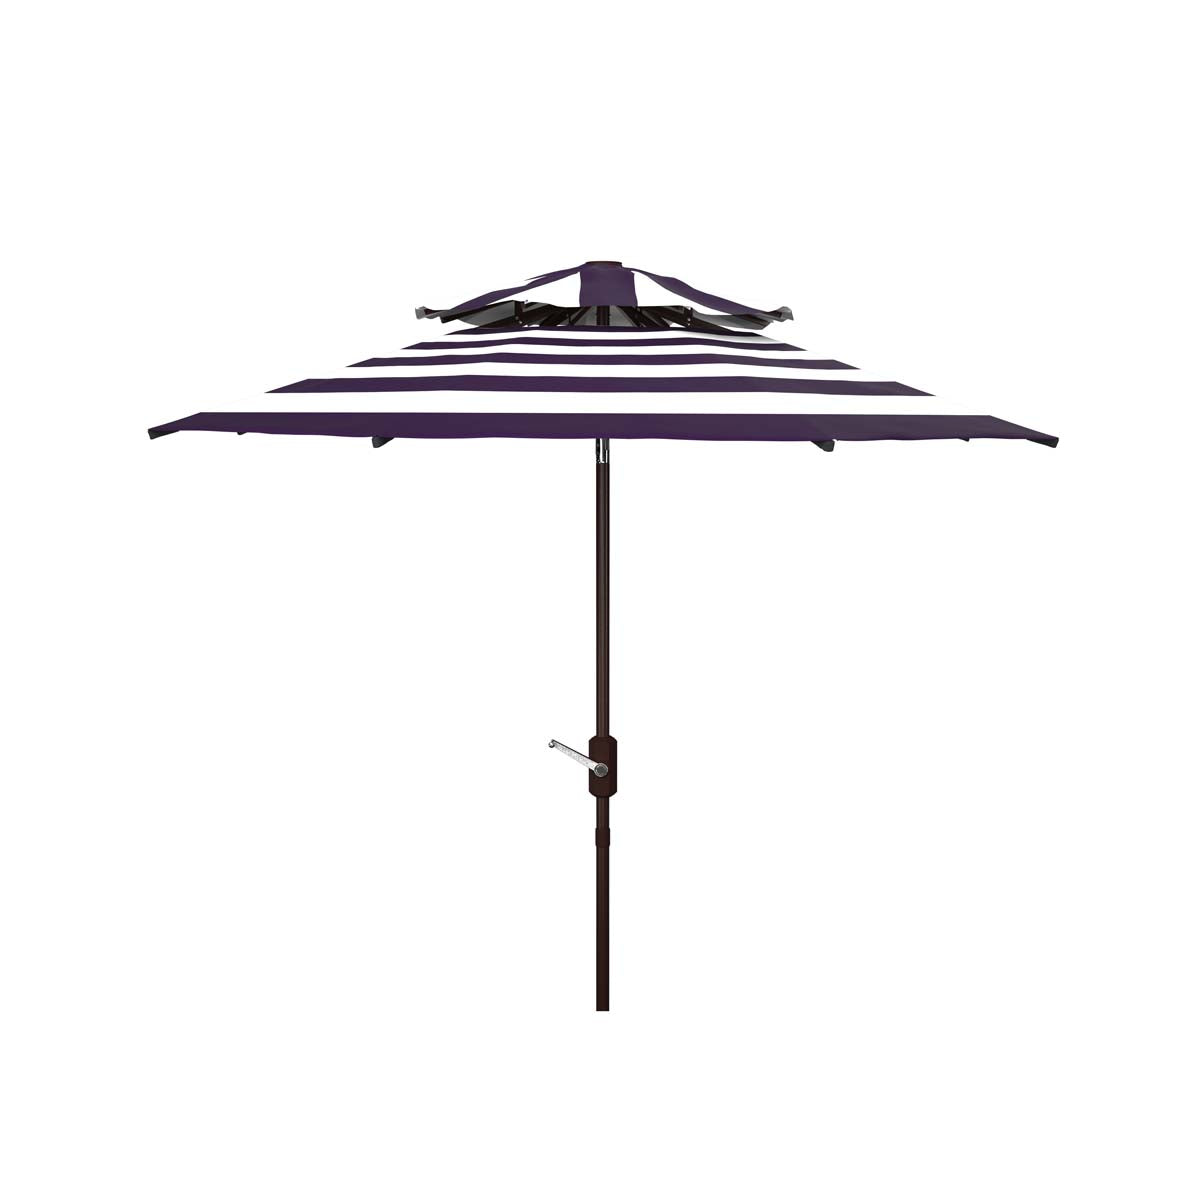 Safavieh Iris Fashion Line 9Ft Double Top Umbrella , PAT8204 - Navy/White